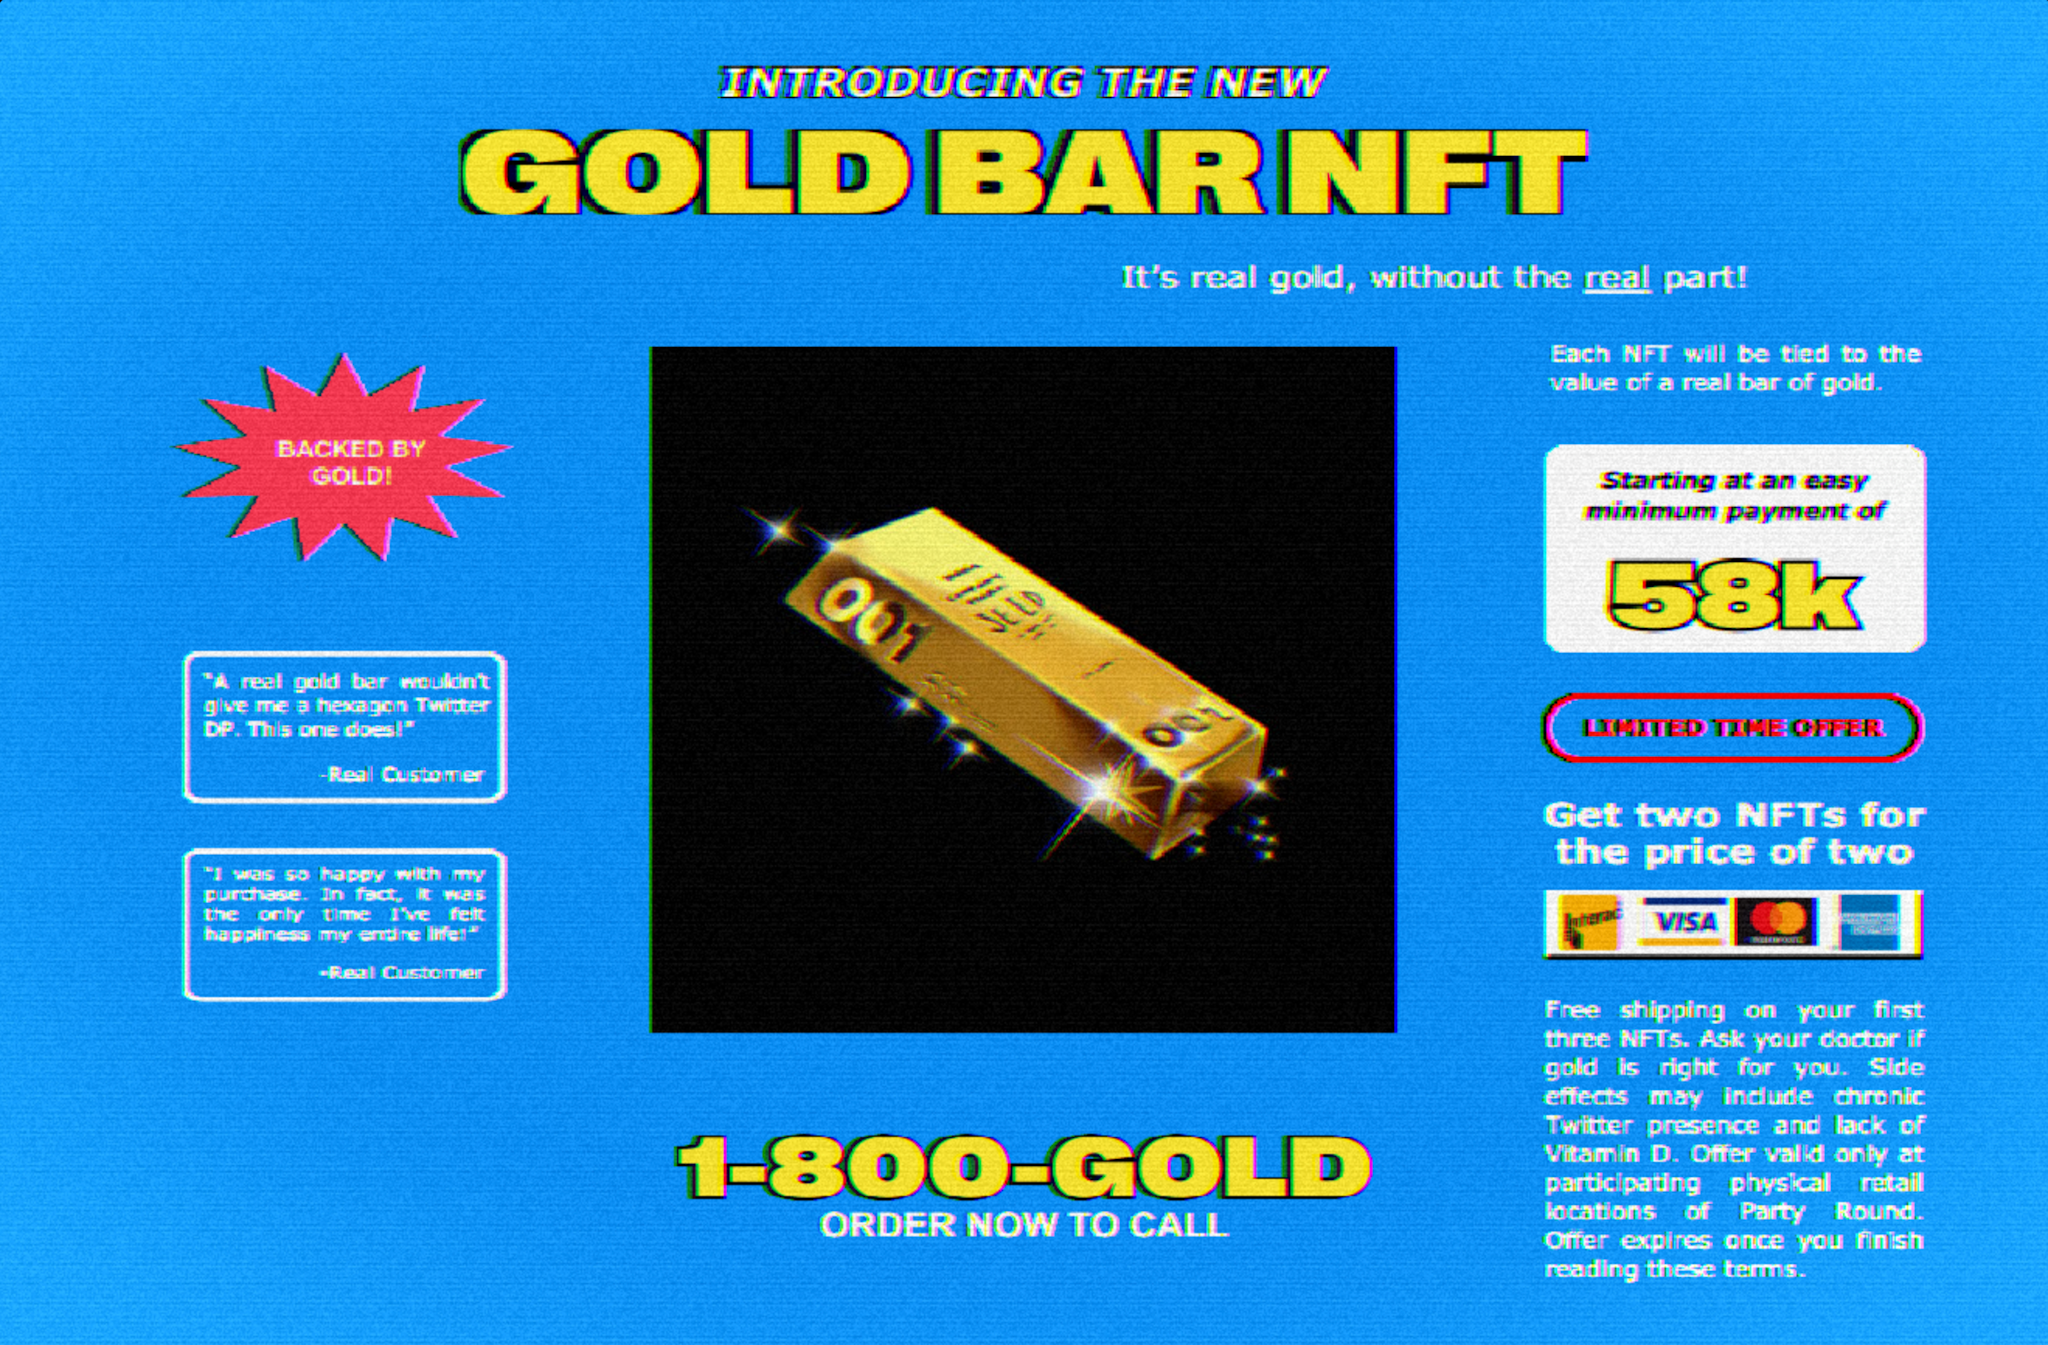 Gold Bar NFT